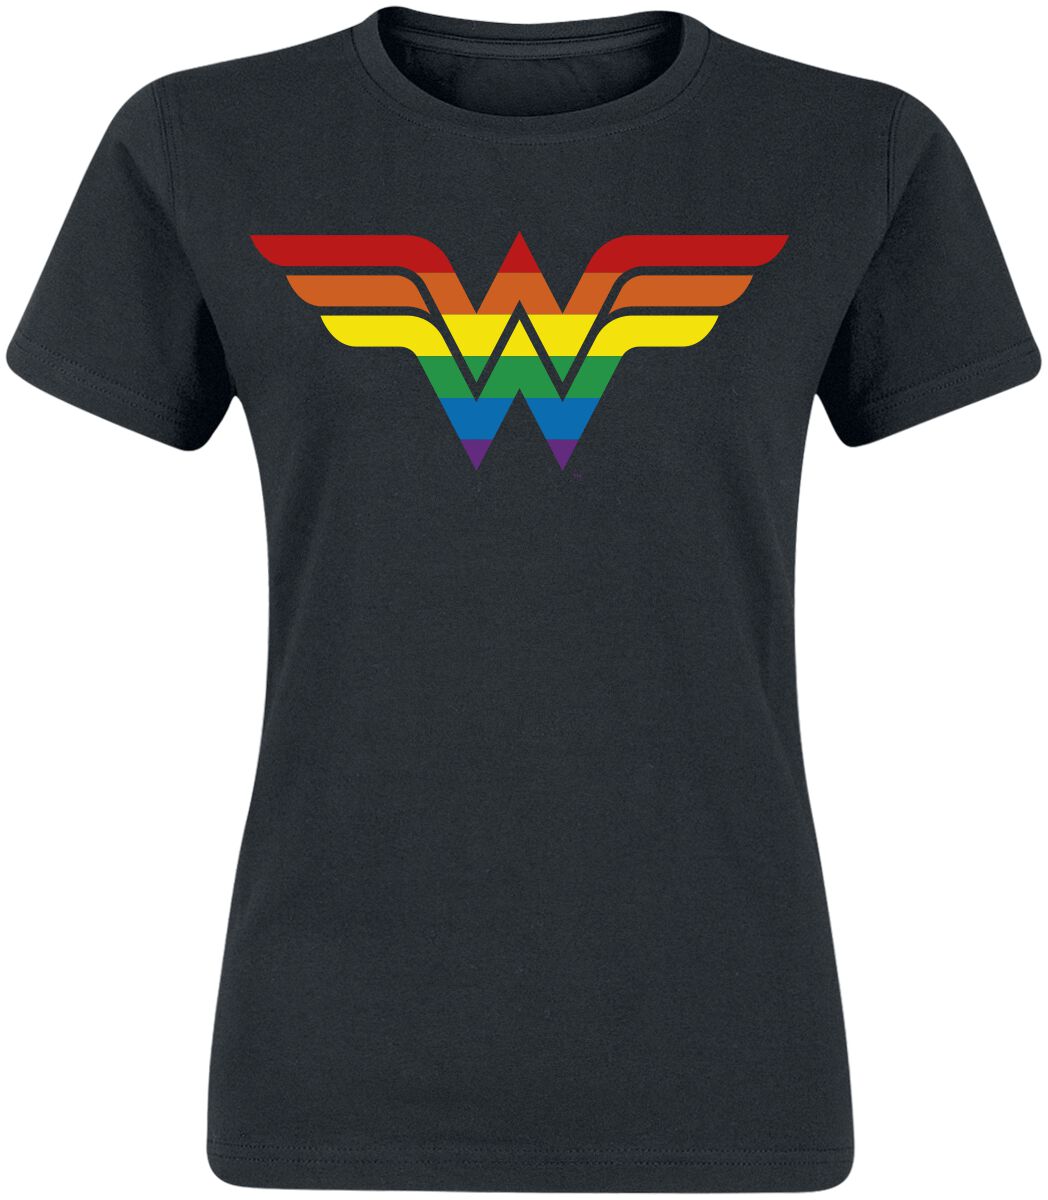 T-Shirt Manches courtes de DC Heroes - Wonder Woman - Pride - S à XXL - pour Femme - noir